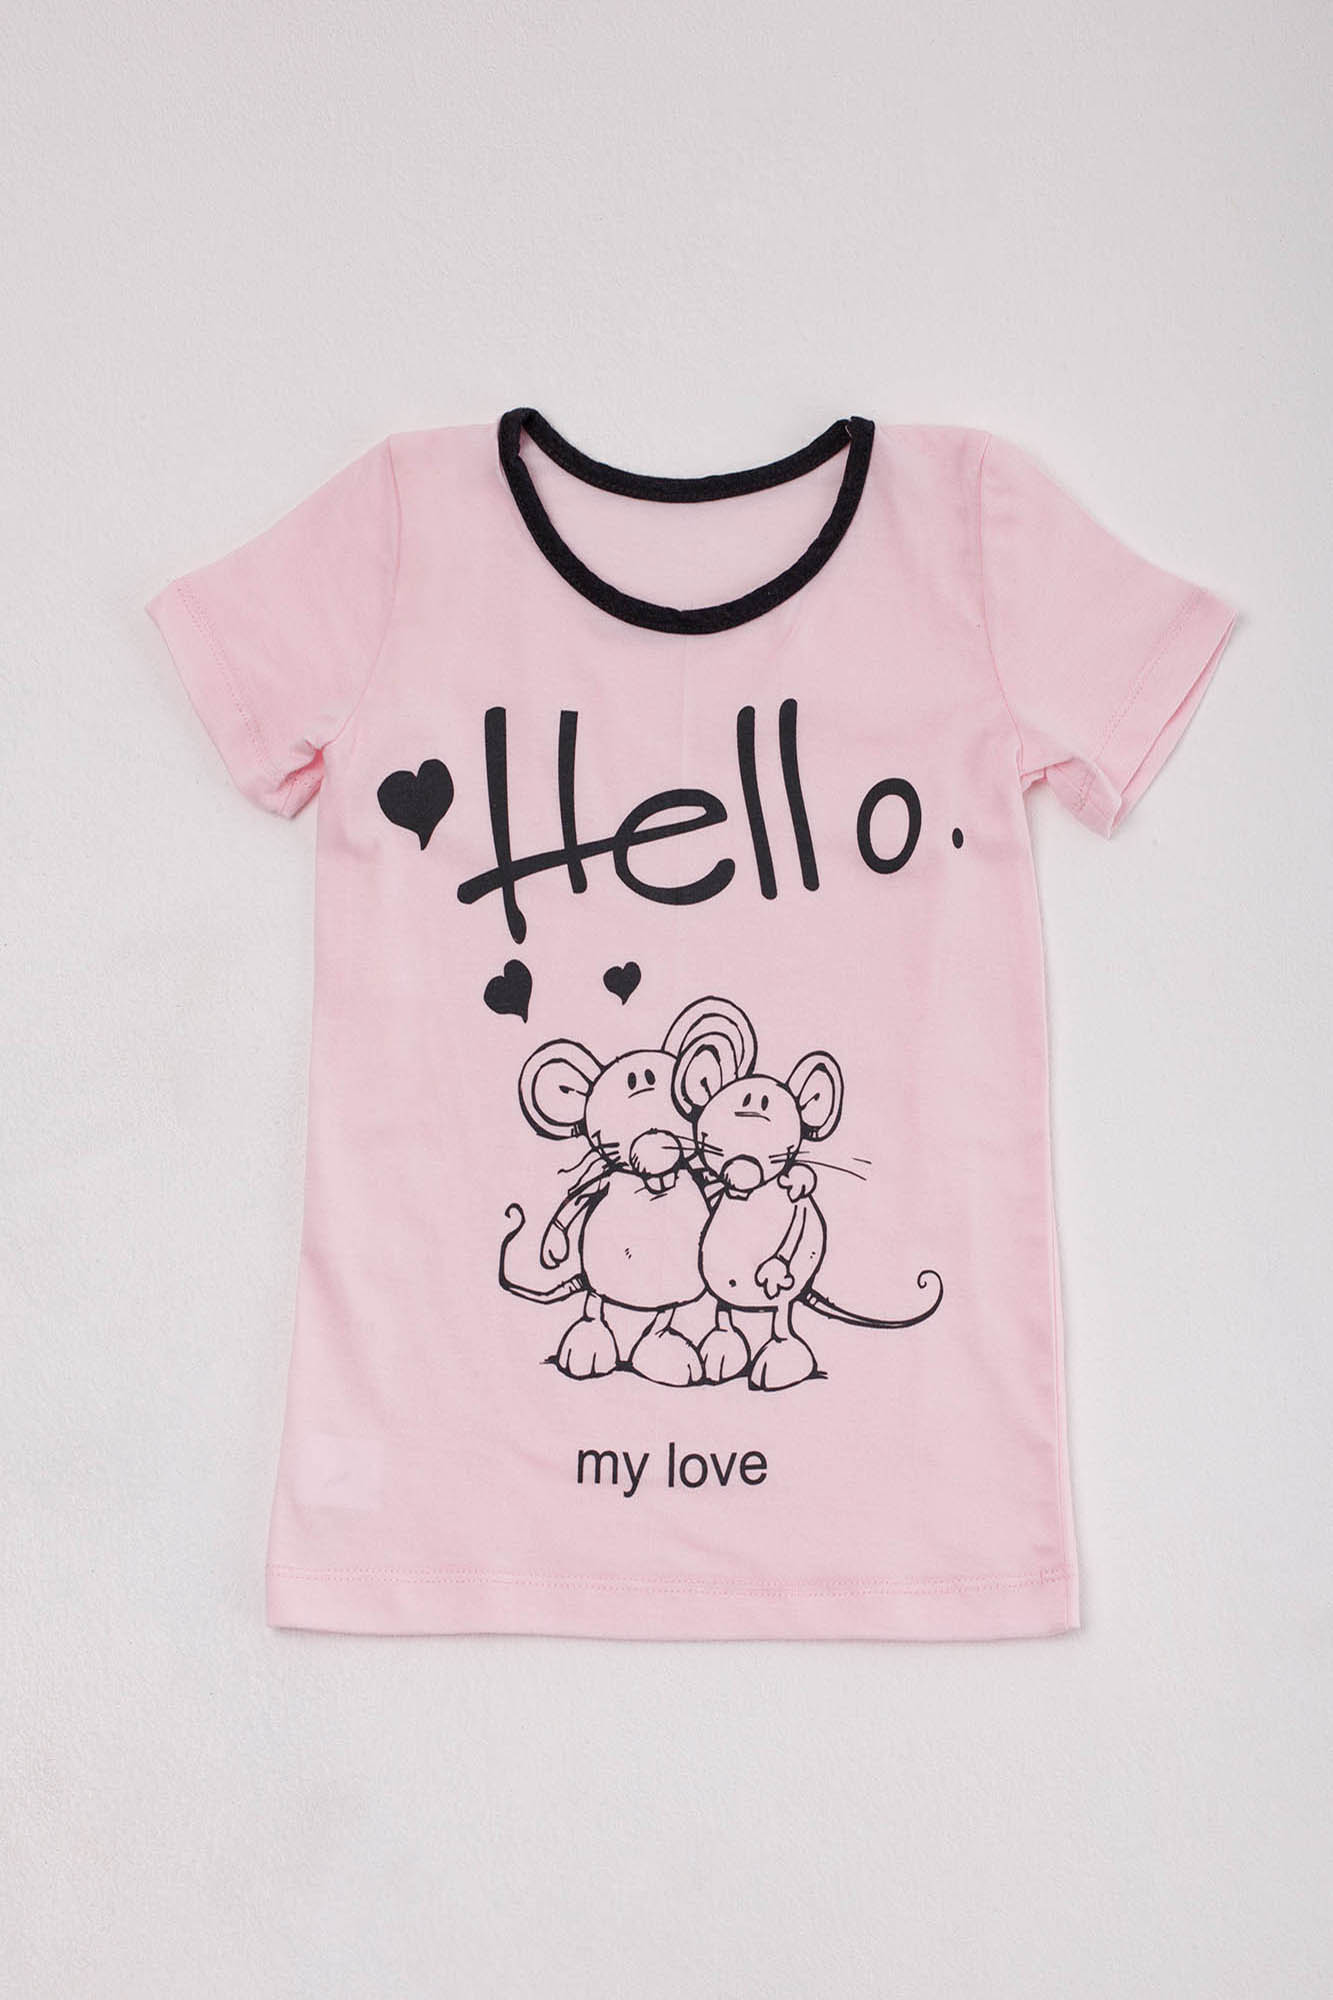 Детская футболка Keeley Цвет: Светло-Розовый (9-10 лет), размер 9-10 лет zar680352 Детская футболка Keeley Цвет: Светло-Розовый (9-10 лет) - фото 1